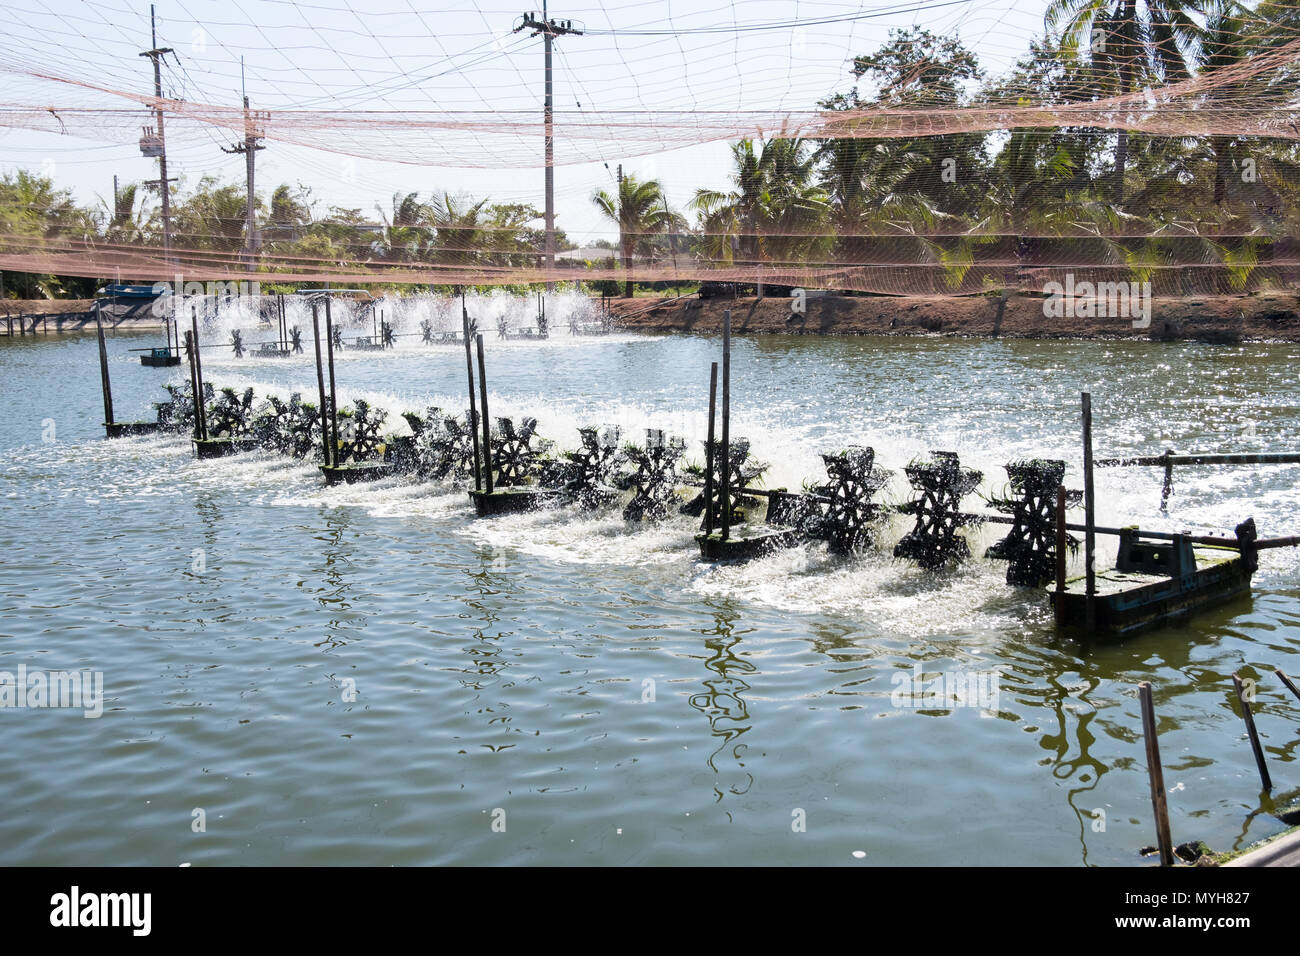 Wasser lüftung Turbine in der Landwirtschaft Aquatic. Garnelen und Fisch Brüterei in Thailand. Stockfoto